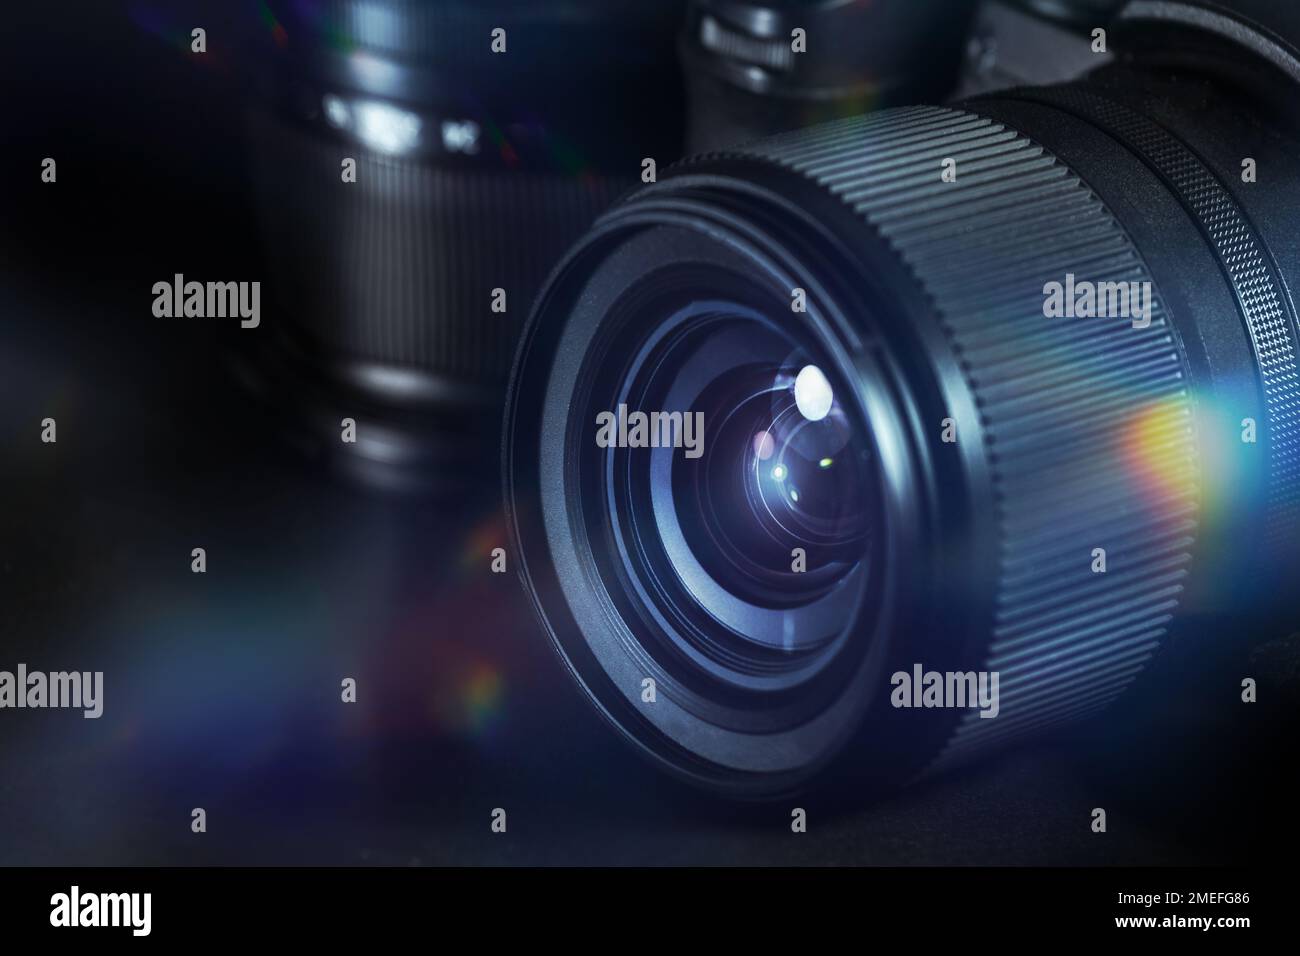 Photographie numérique, objectif d'un appareil photo noir avec reflets et reflets sur fond sombre, équipement technique pour les affaires et l'art, copie de spac Banque D'Images